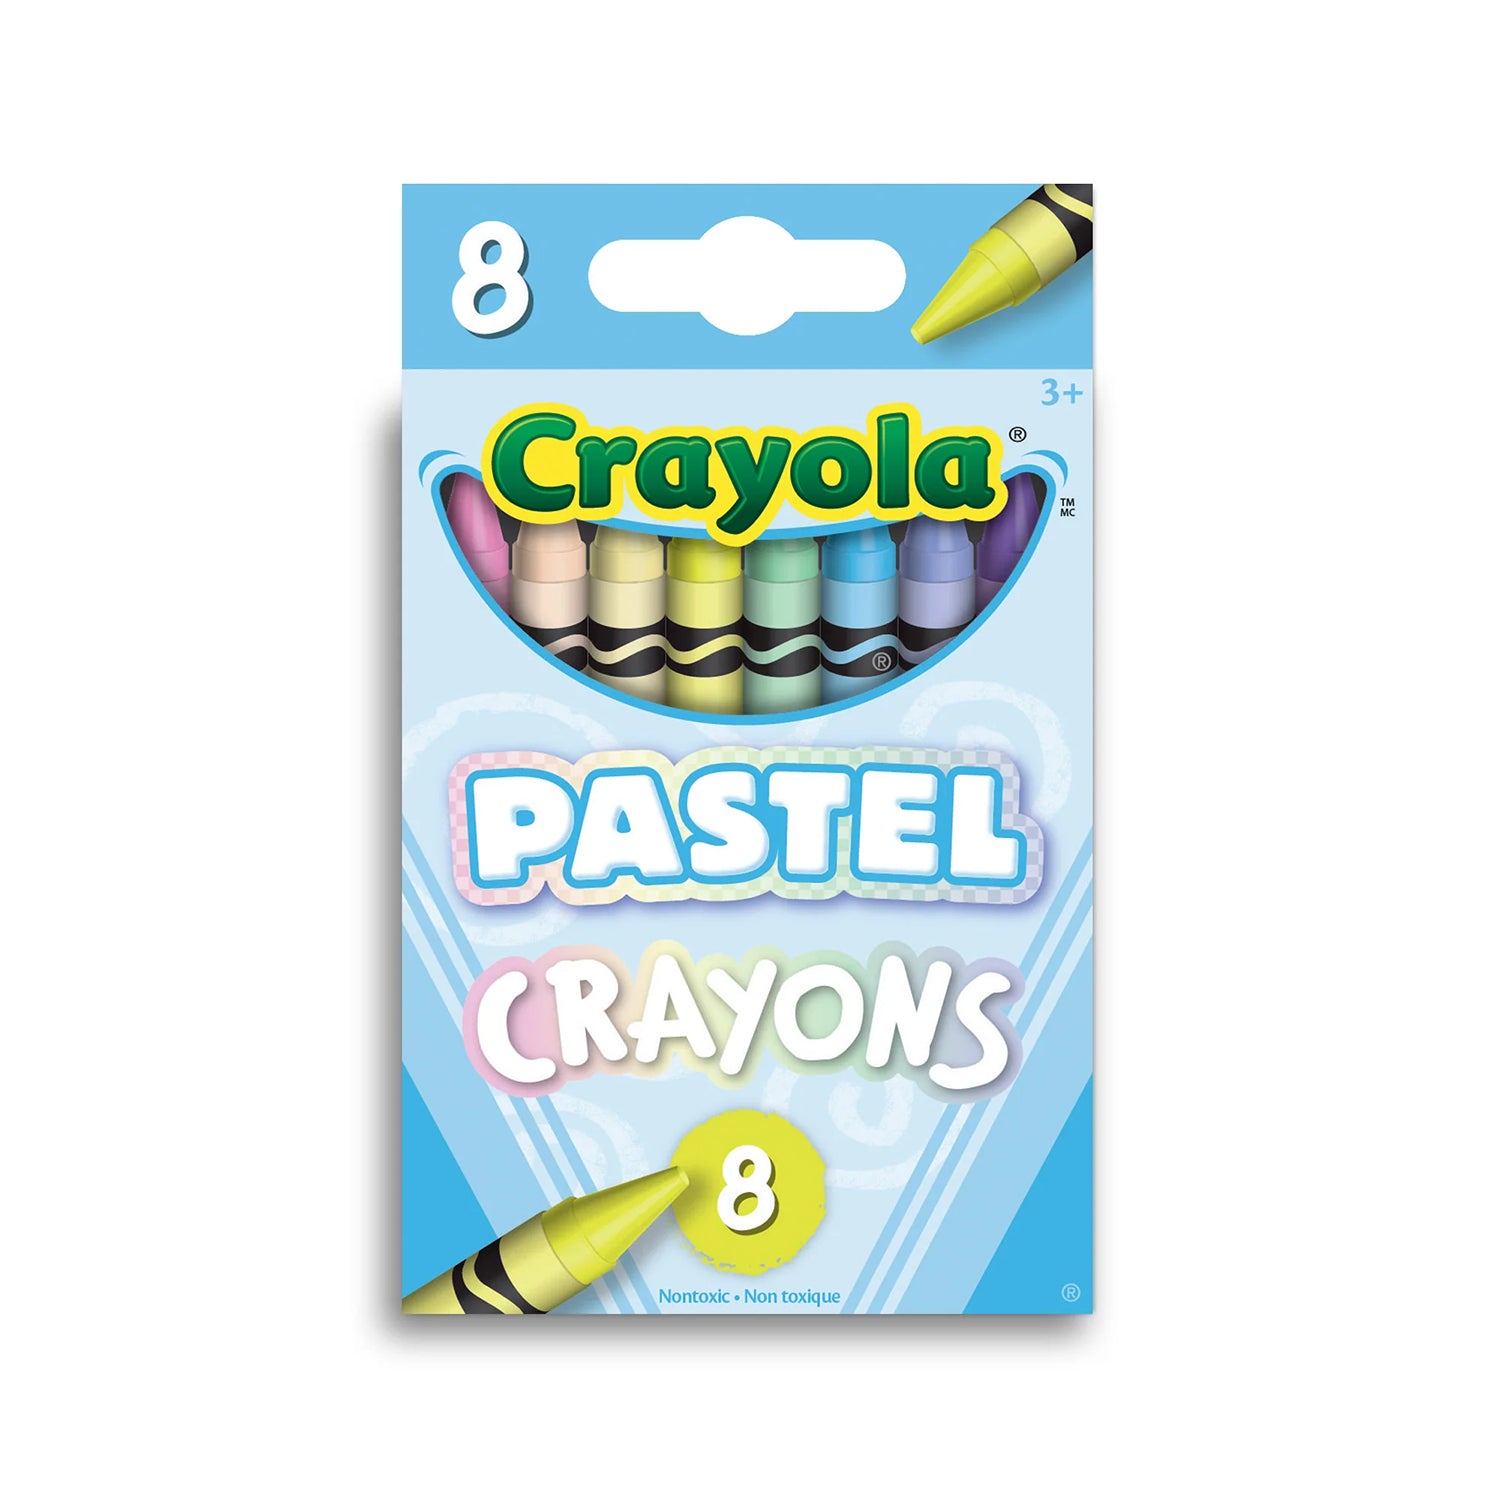 Crayola Crayons, 8 Count